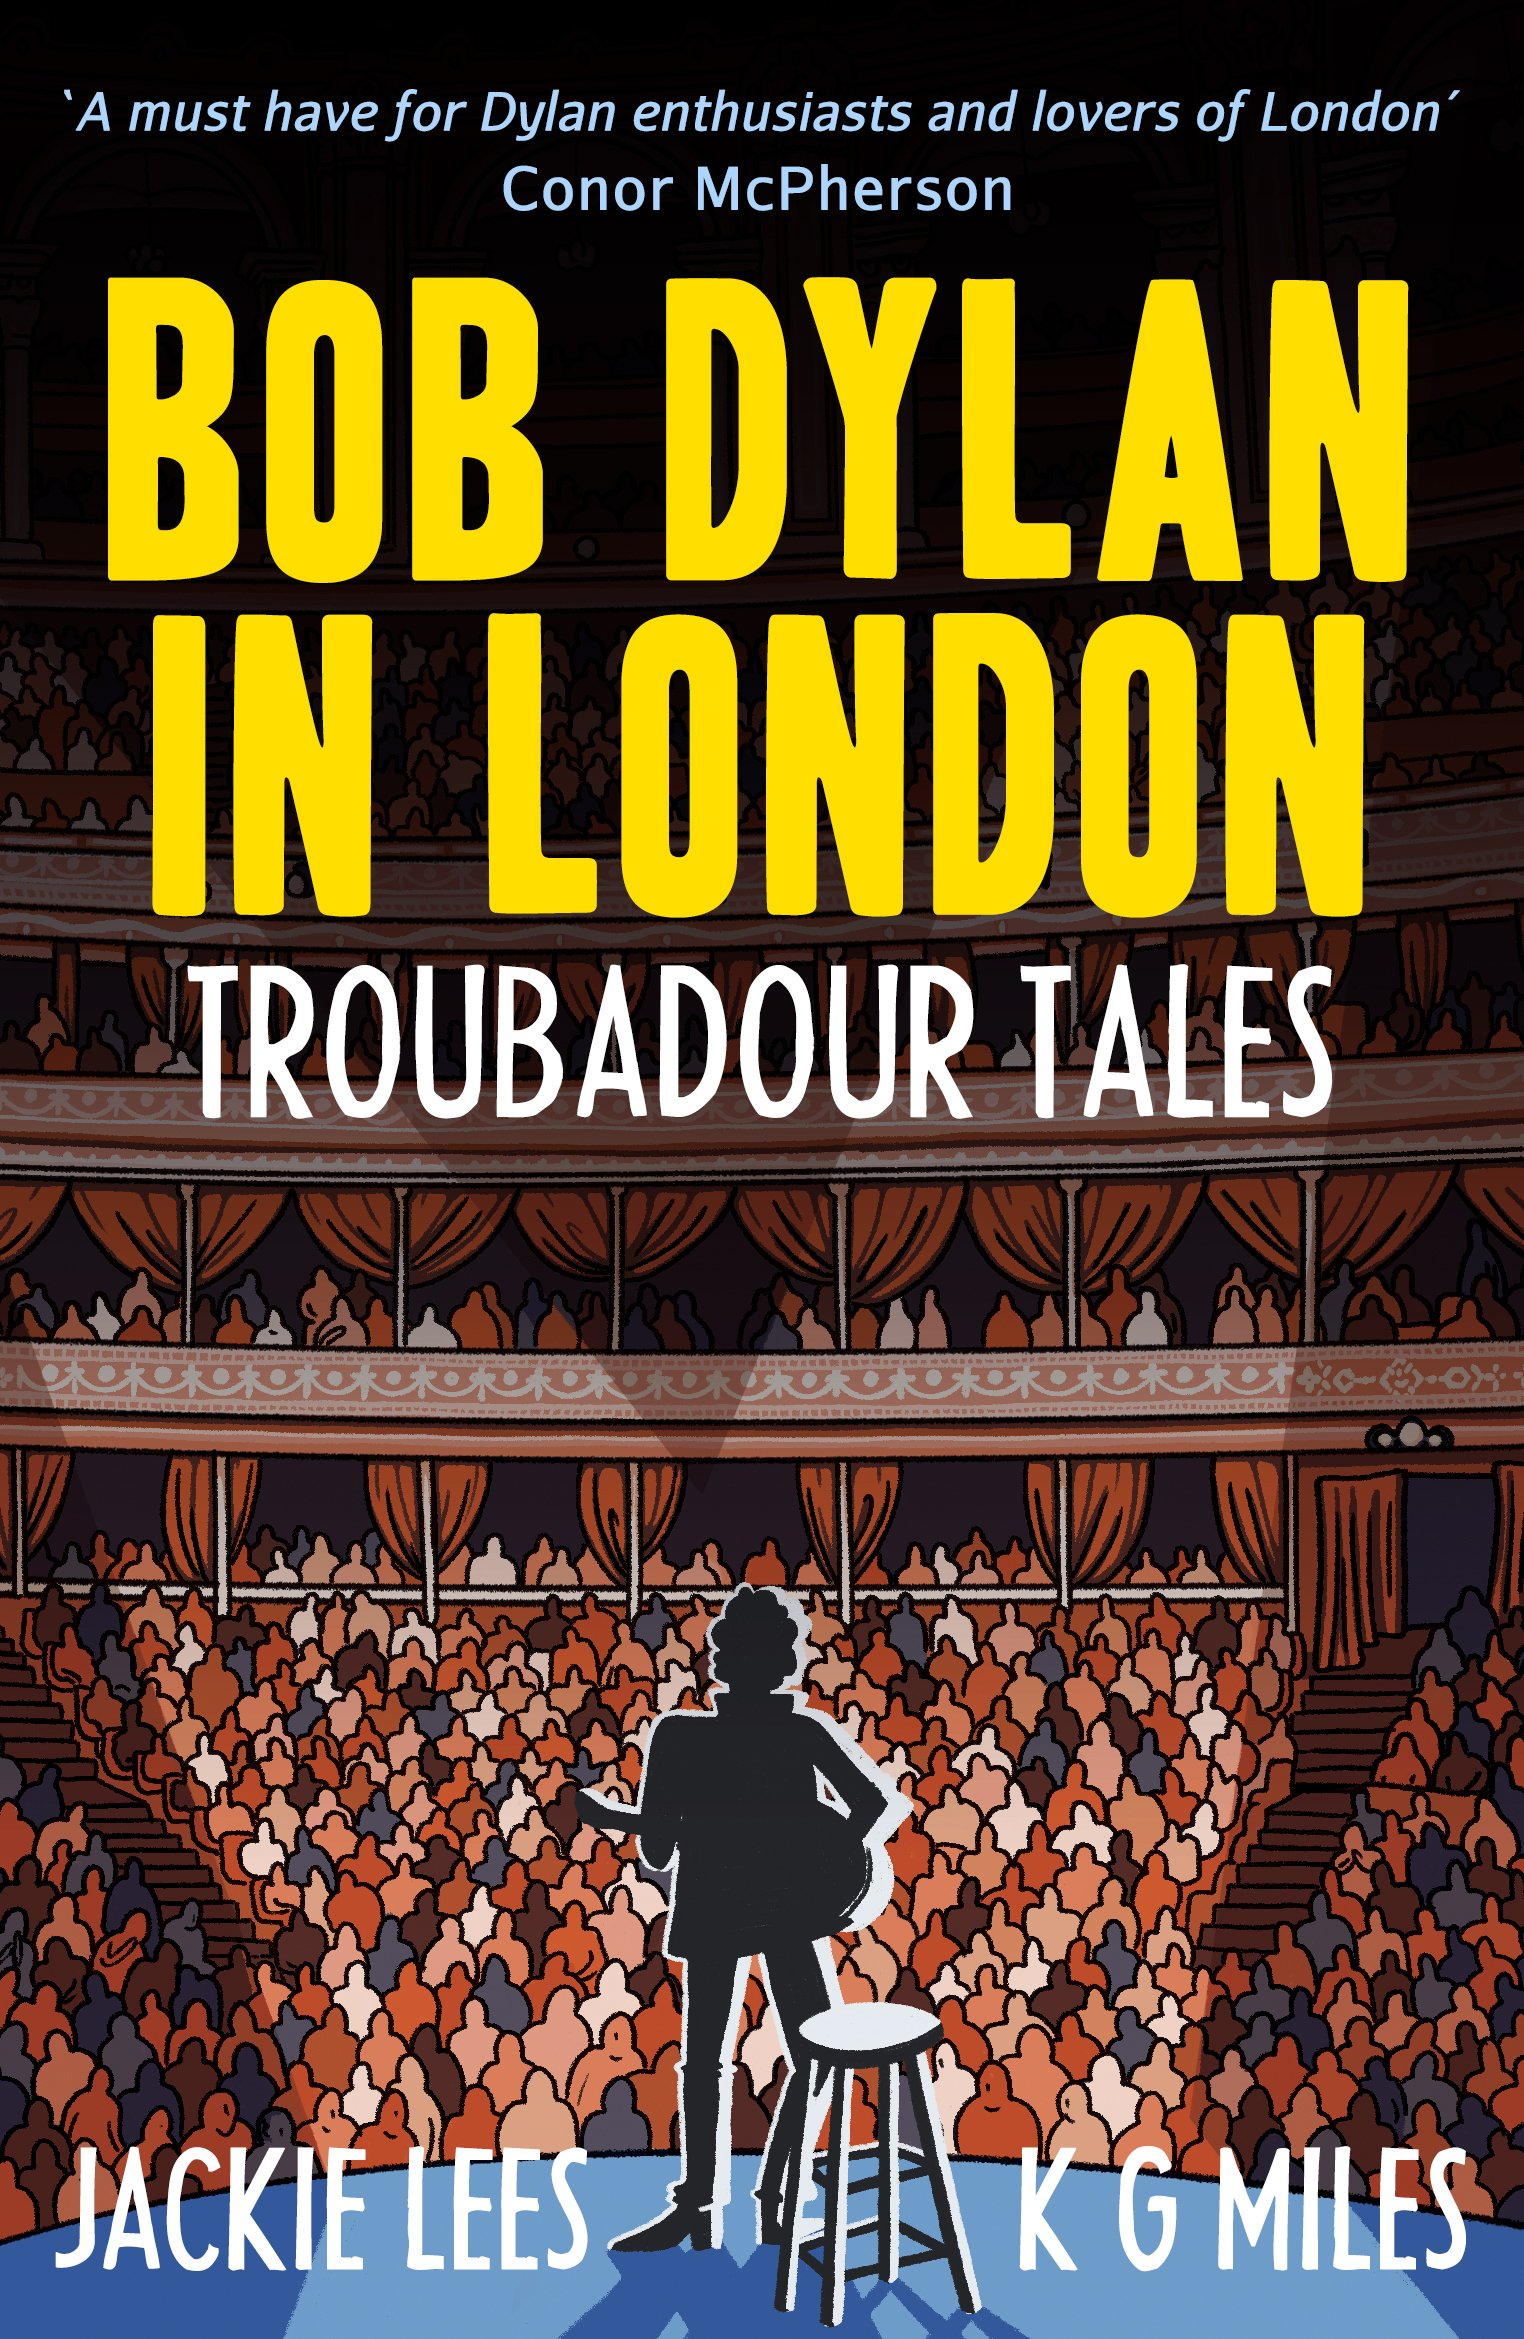 Bob Dylan in London Troubadour Tales.